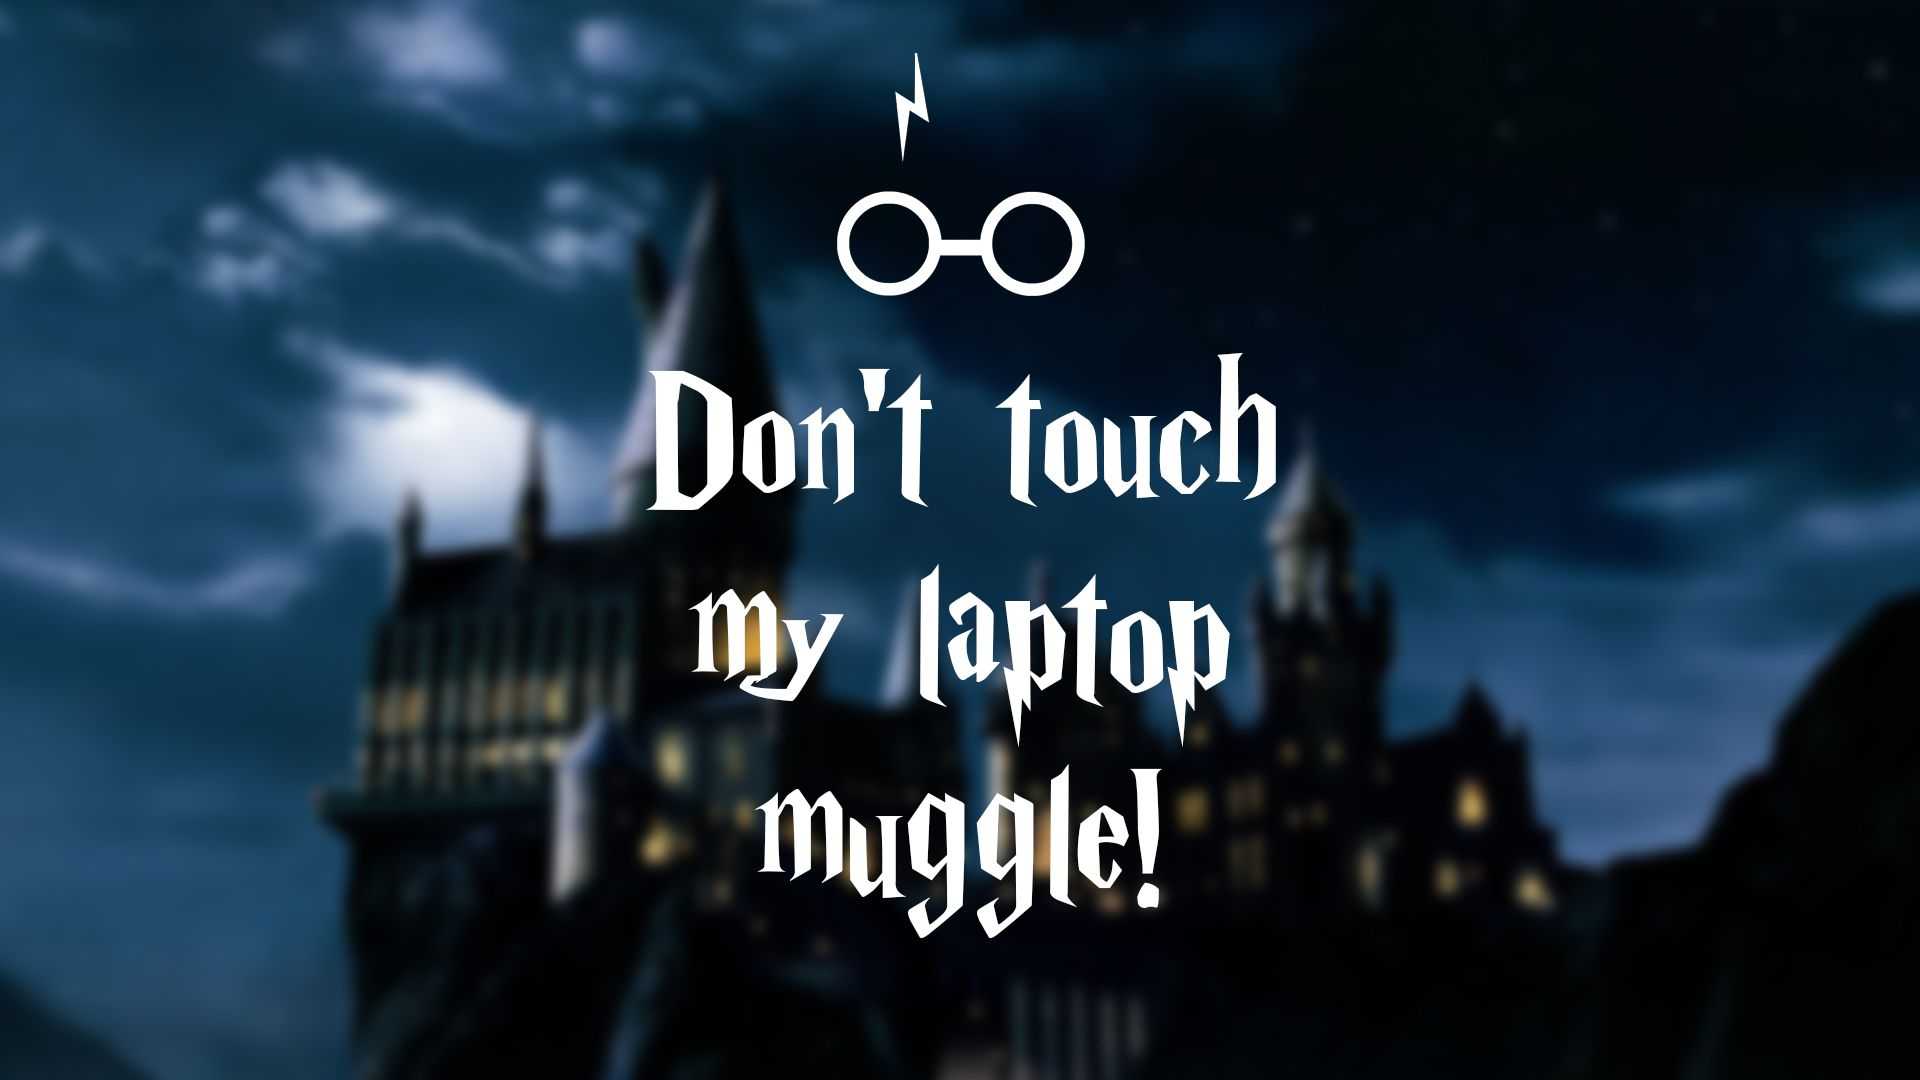 Hình nền Harry Potter